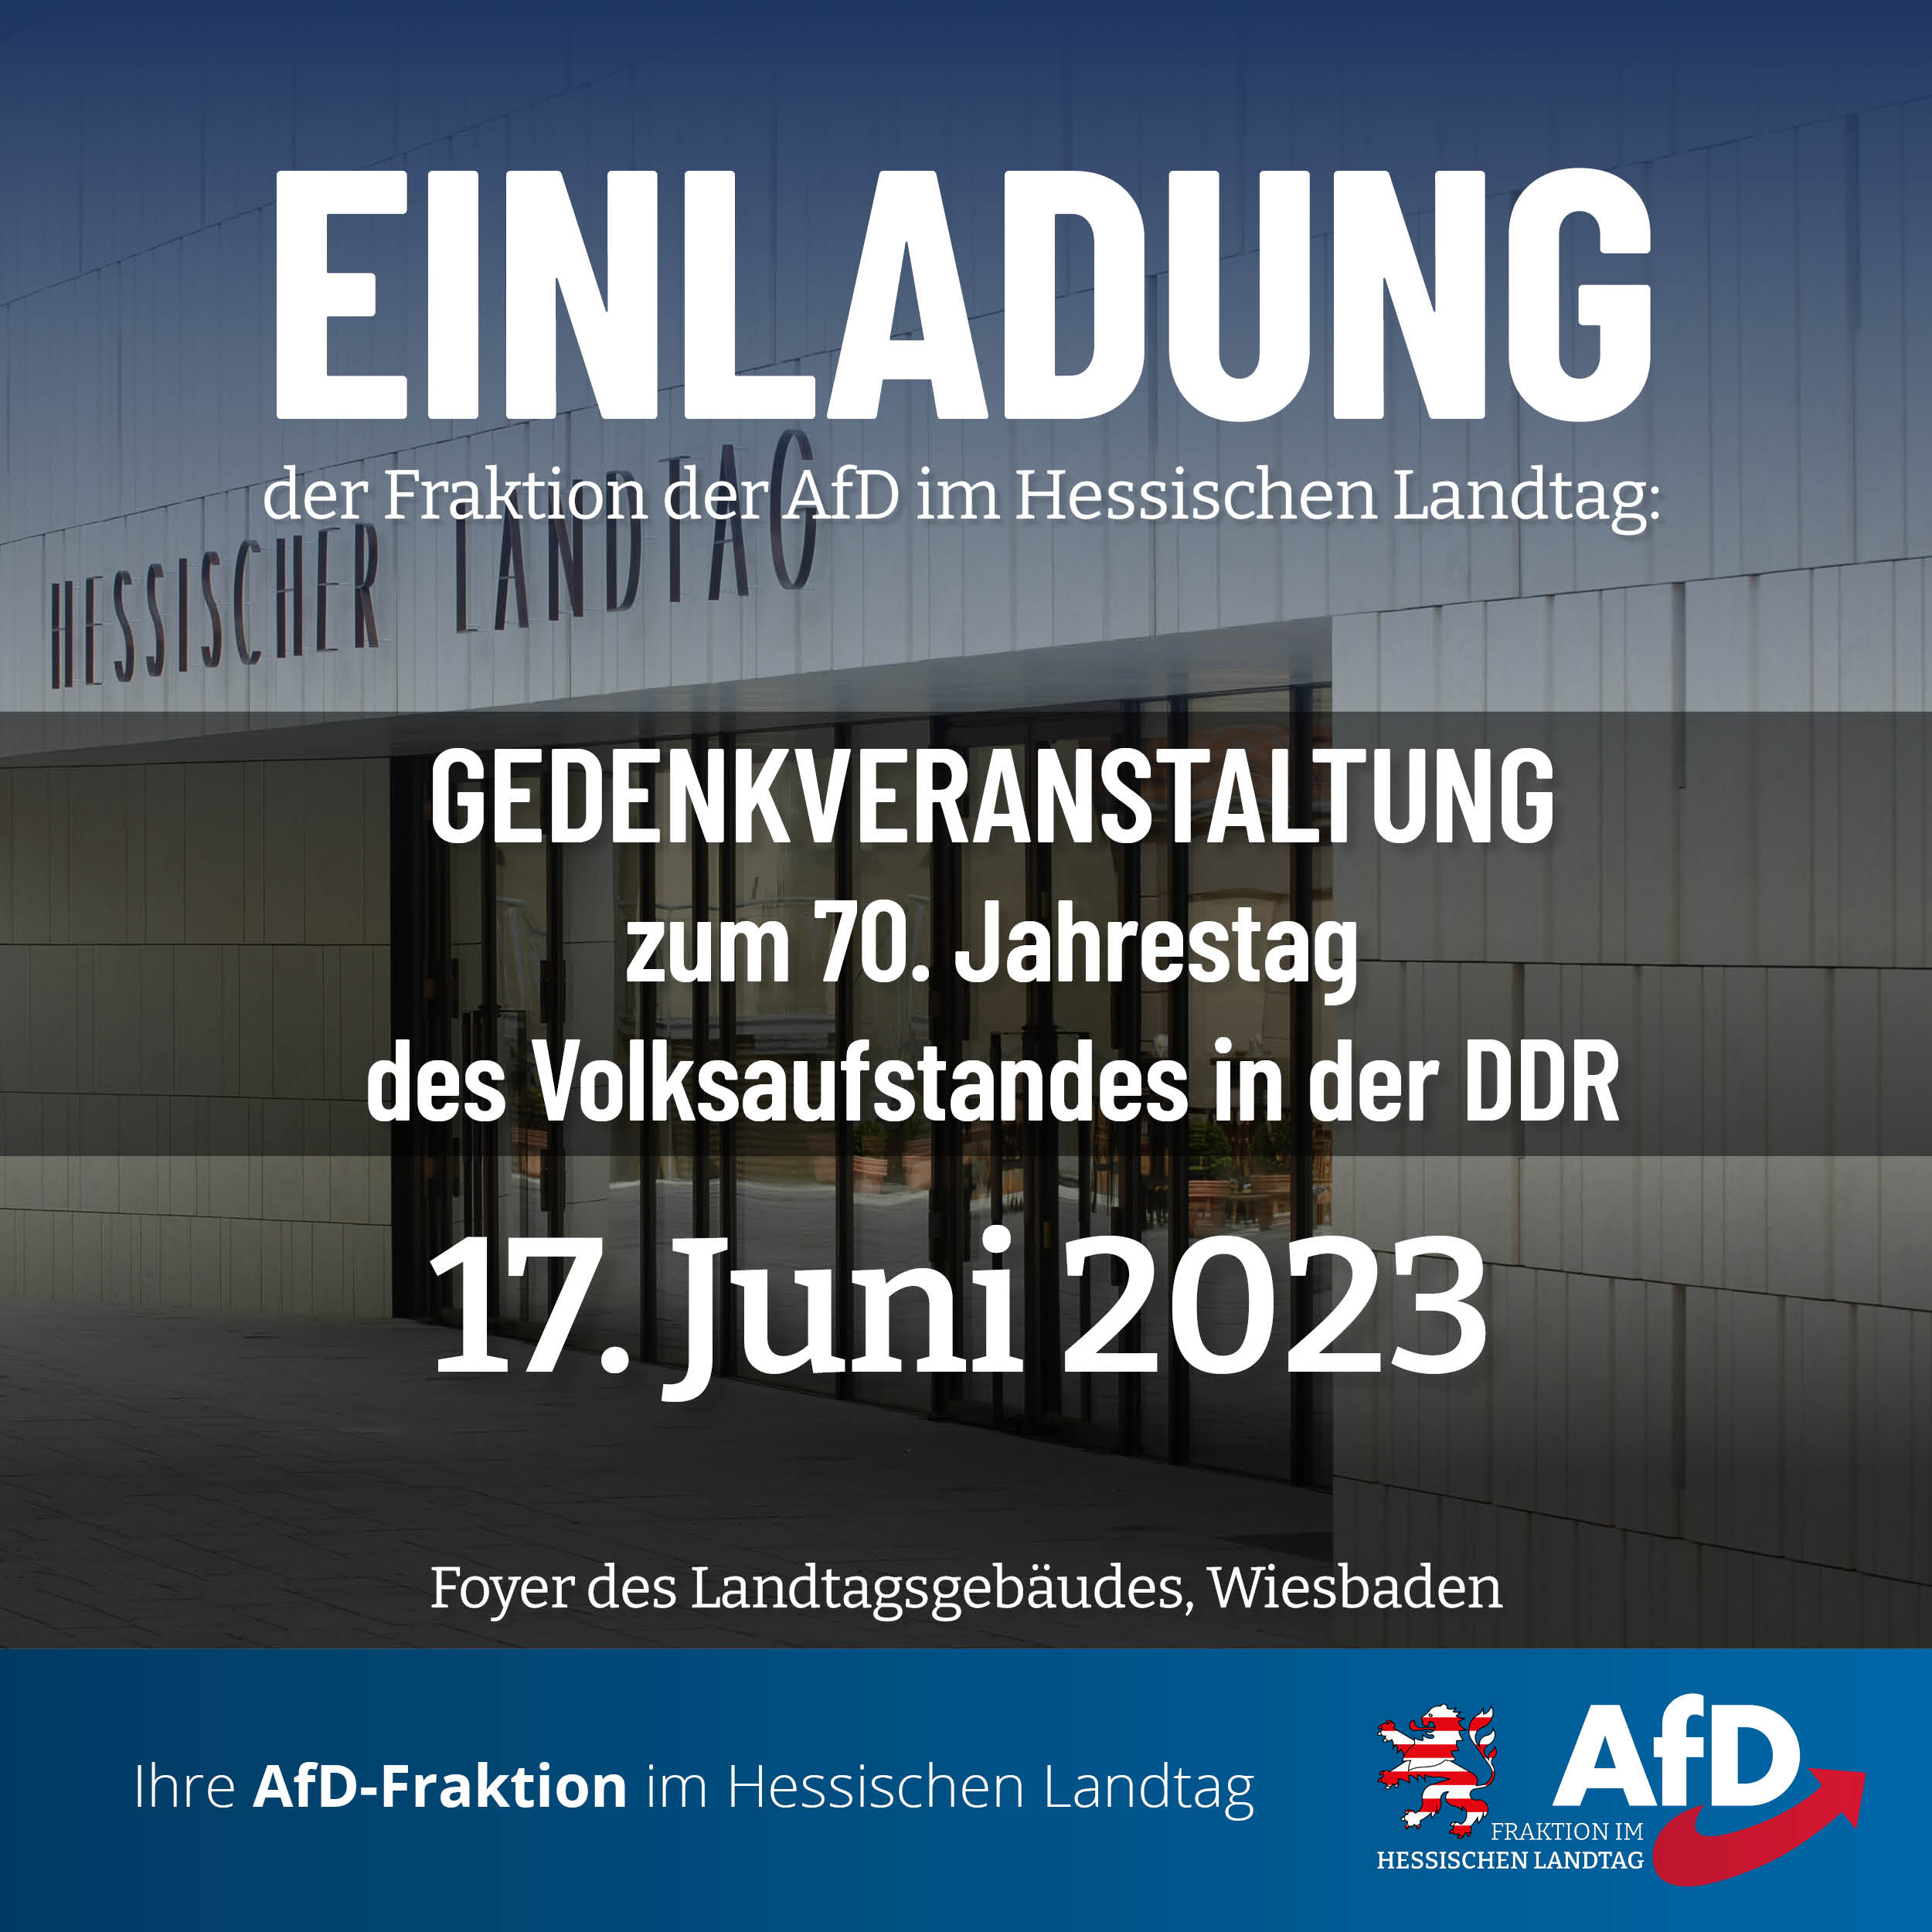 You are currently viewing Einladung der Fraktion der AfD im Hessischen Landtag: